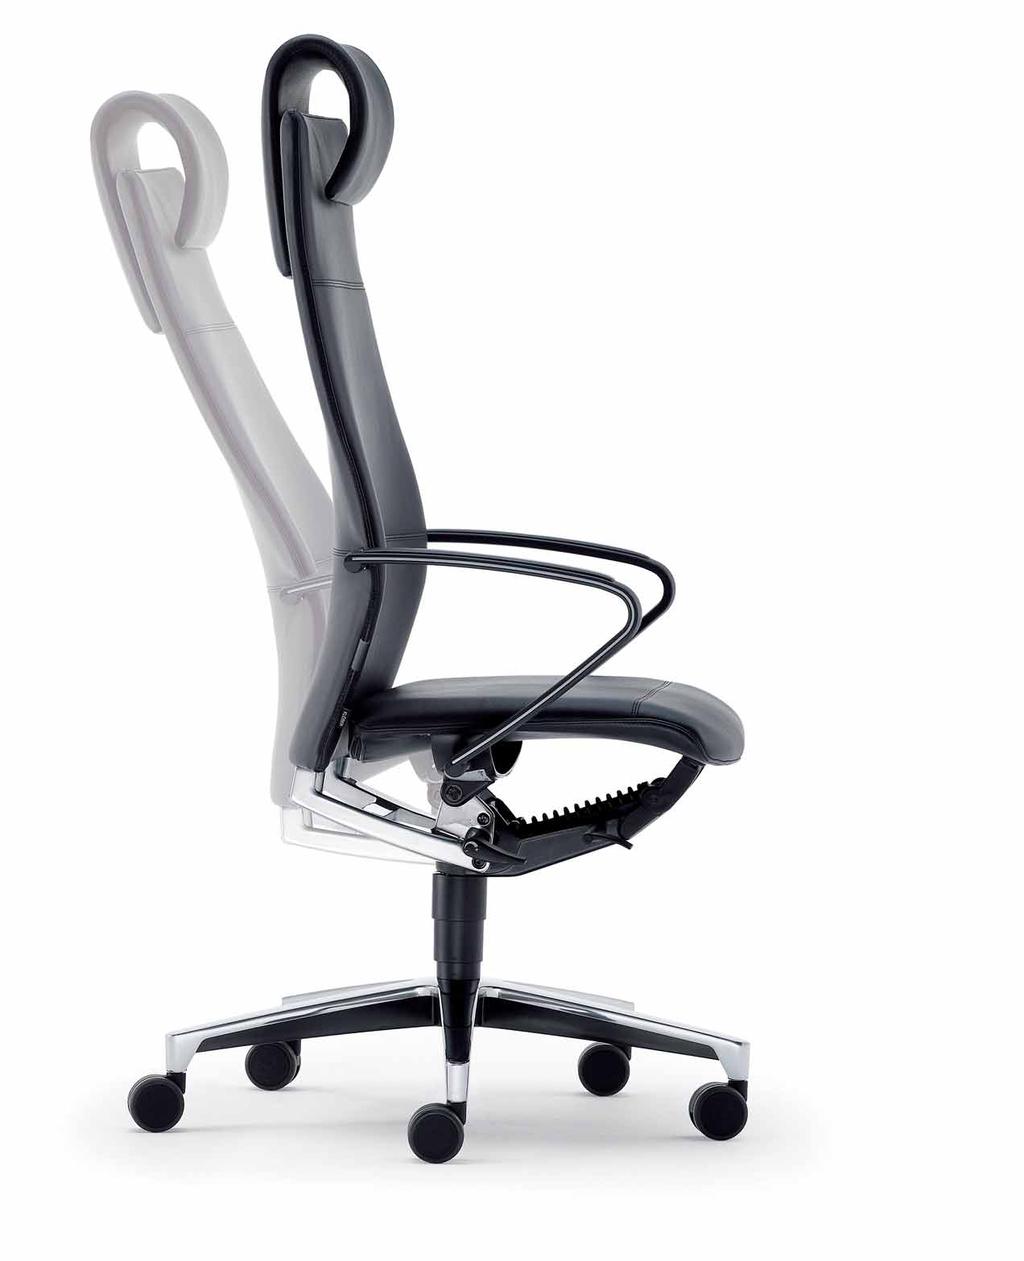 Verhältnis Sitz- / Lehnenneigung 1:4 für dynamischen, körpernahen Bewegungsablauf. Vermeidet schädliche, starre Körperhaltung. 3-fach arretierbar.